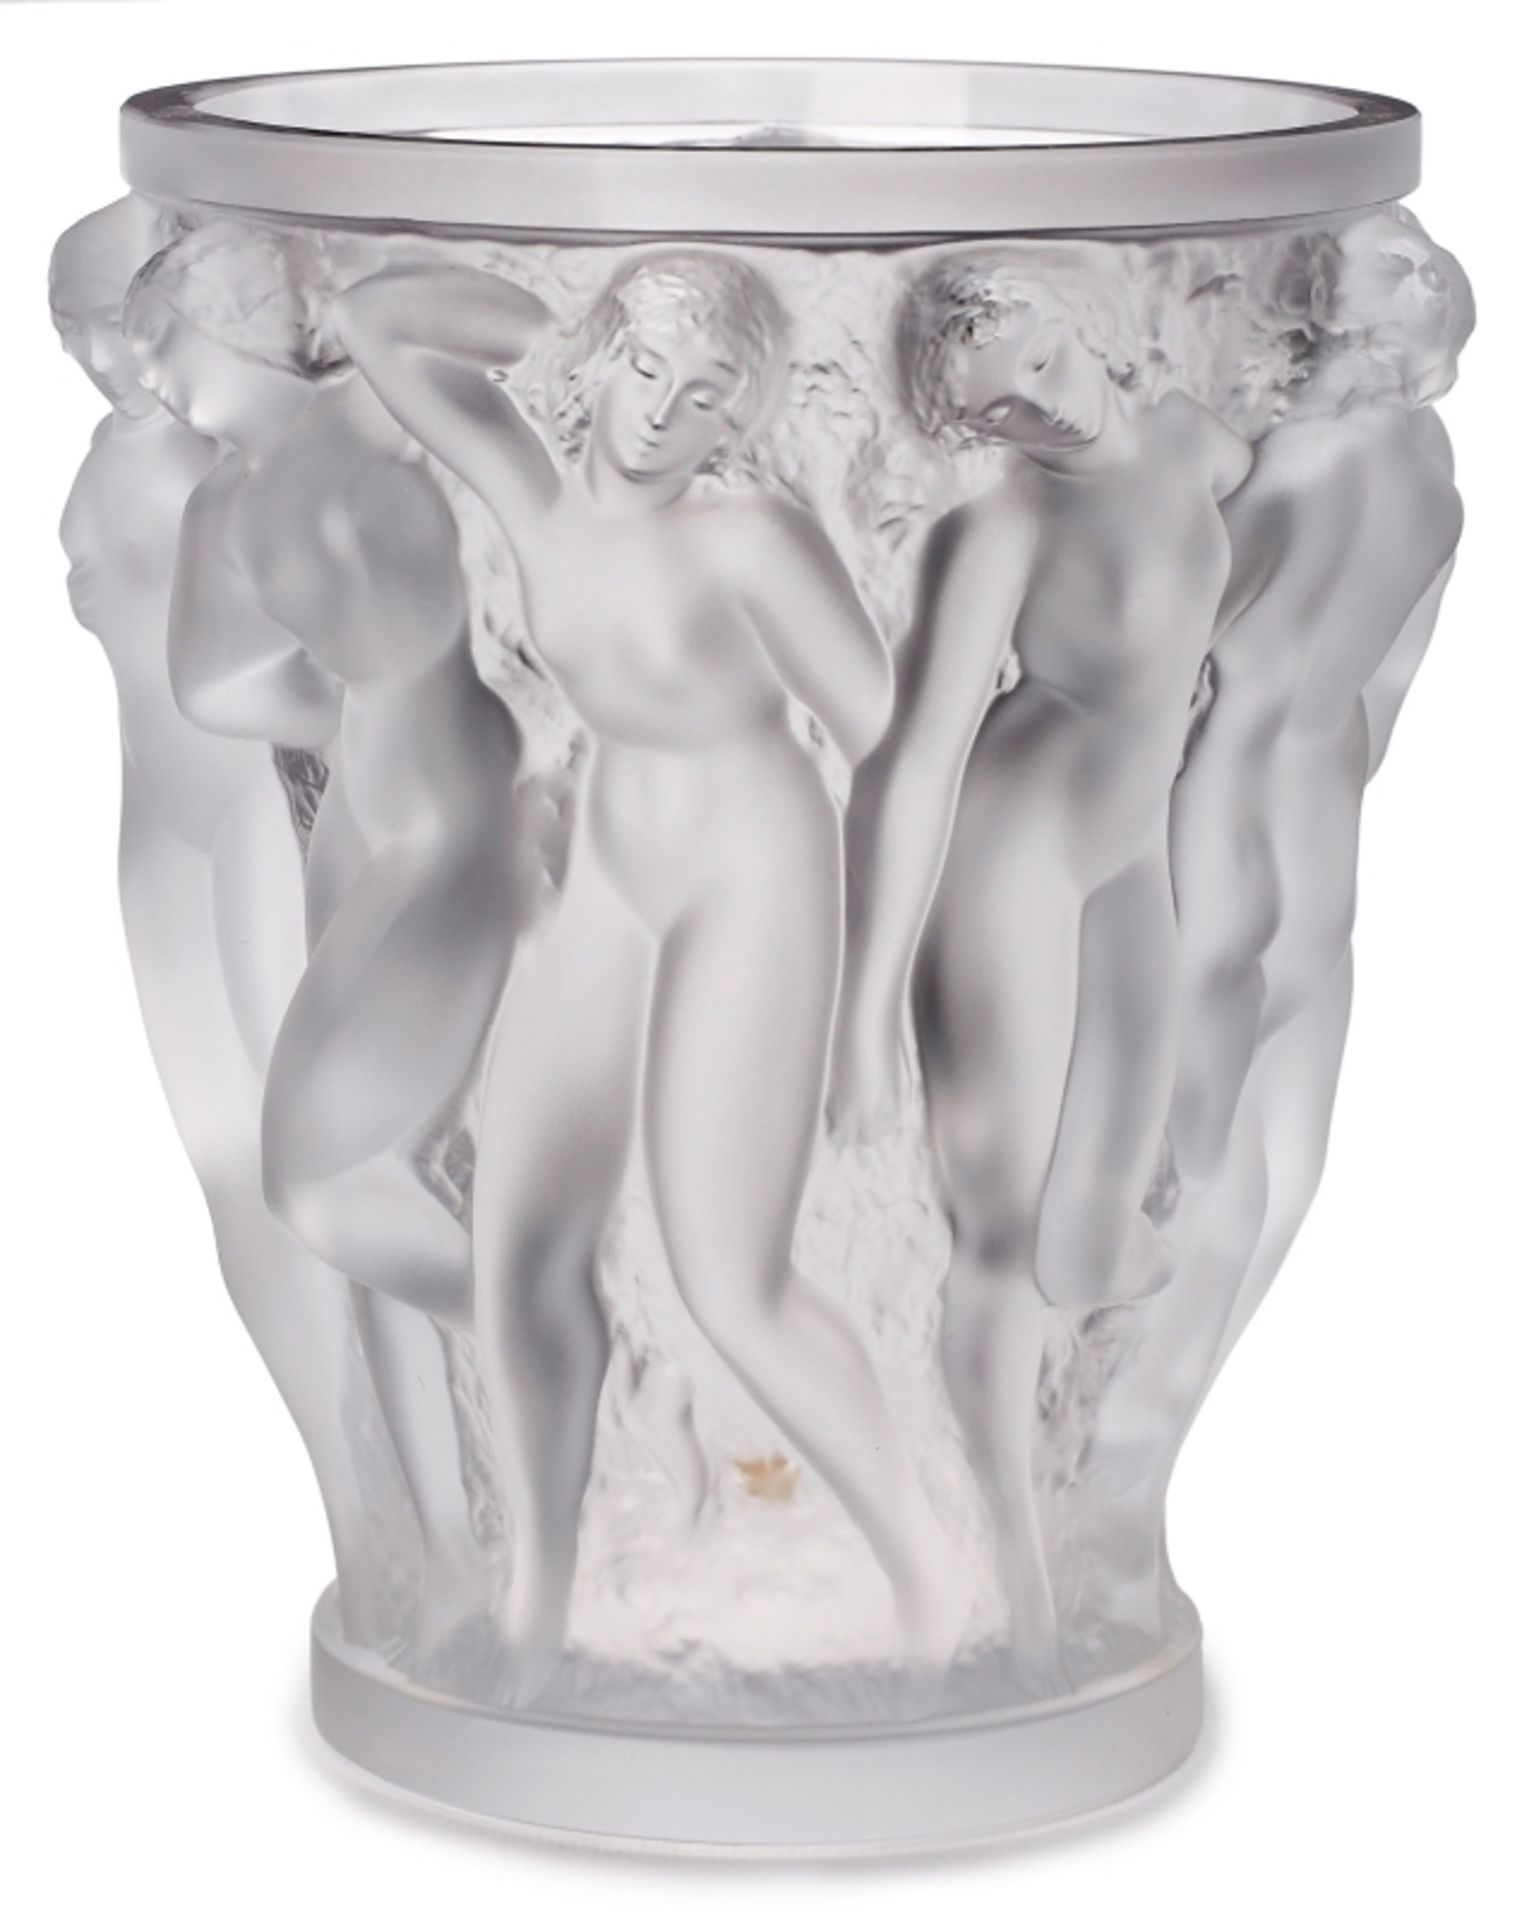 Gr. Vase "Bacchantes Grand", Lalique Ende 20. Jh. - Bild 2 aus 3